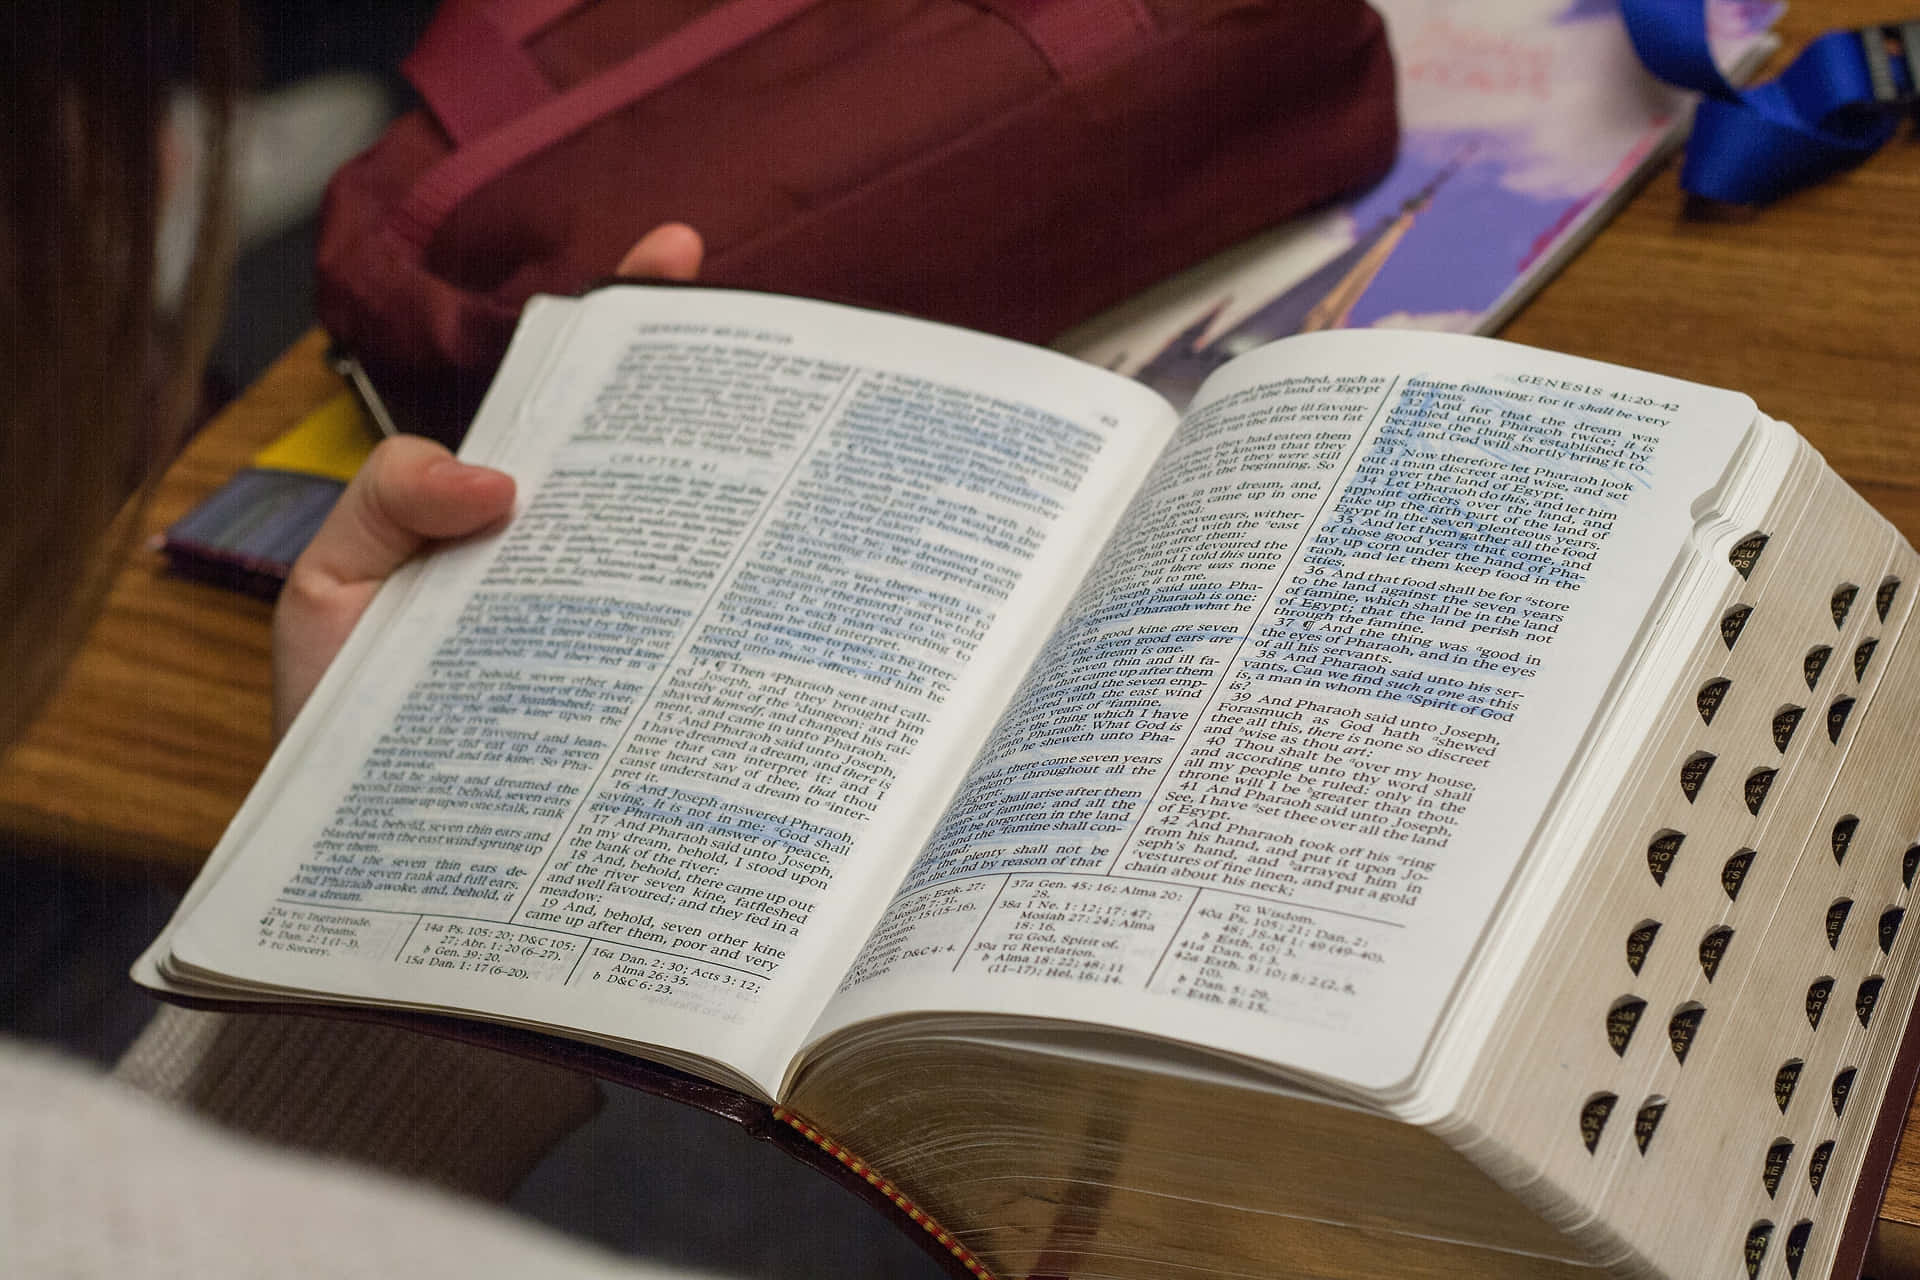 Eineperson Liest Eine Bibel An Einem Schreibtisch.